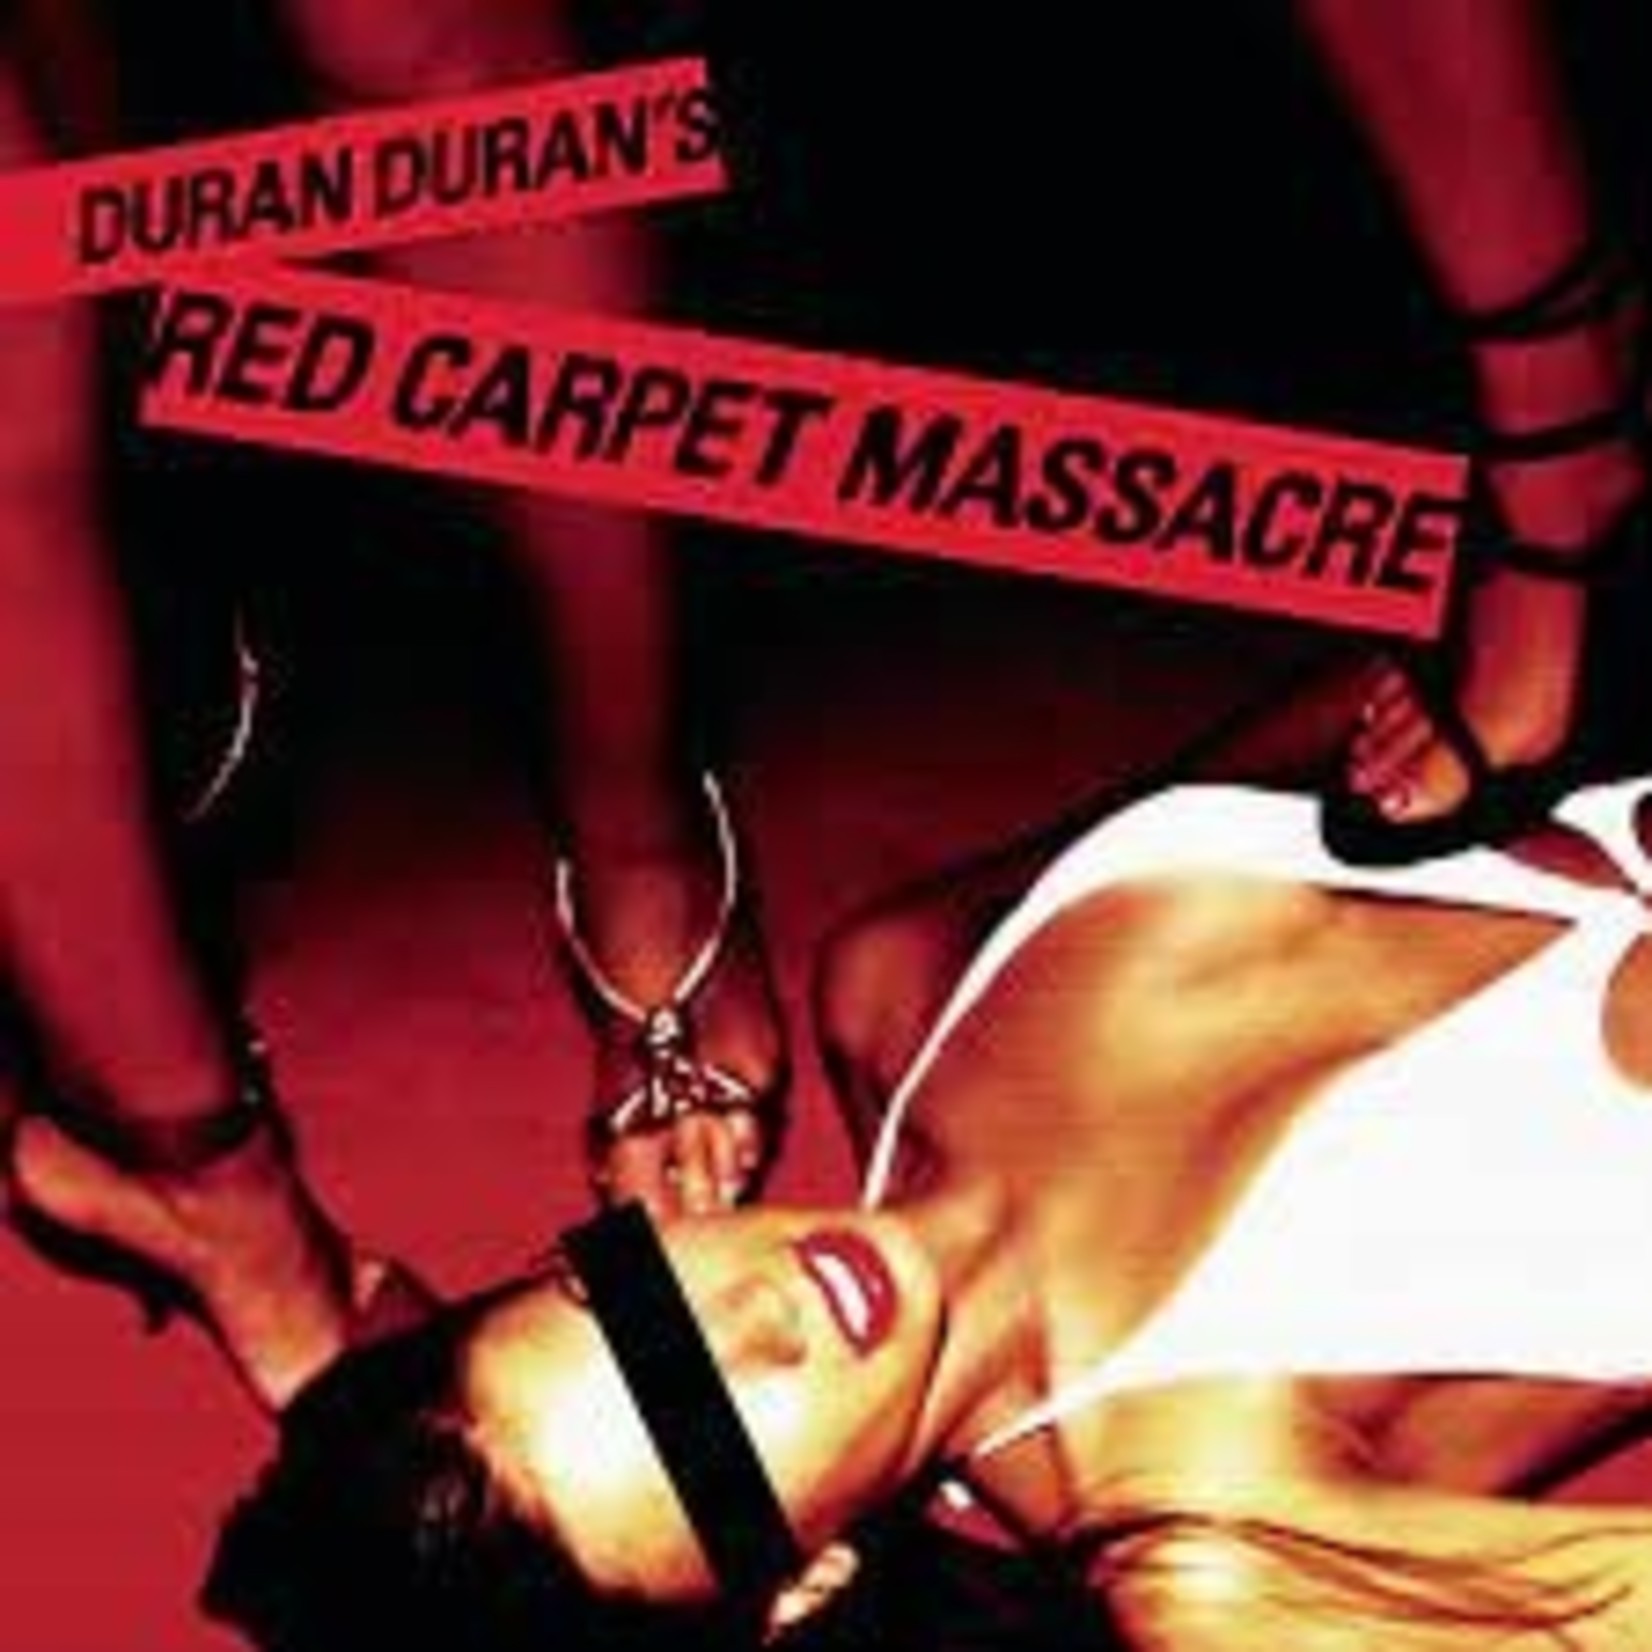 DURAN DURAN - red carpet massacre DLP